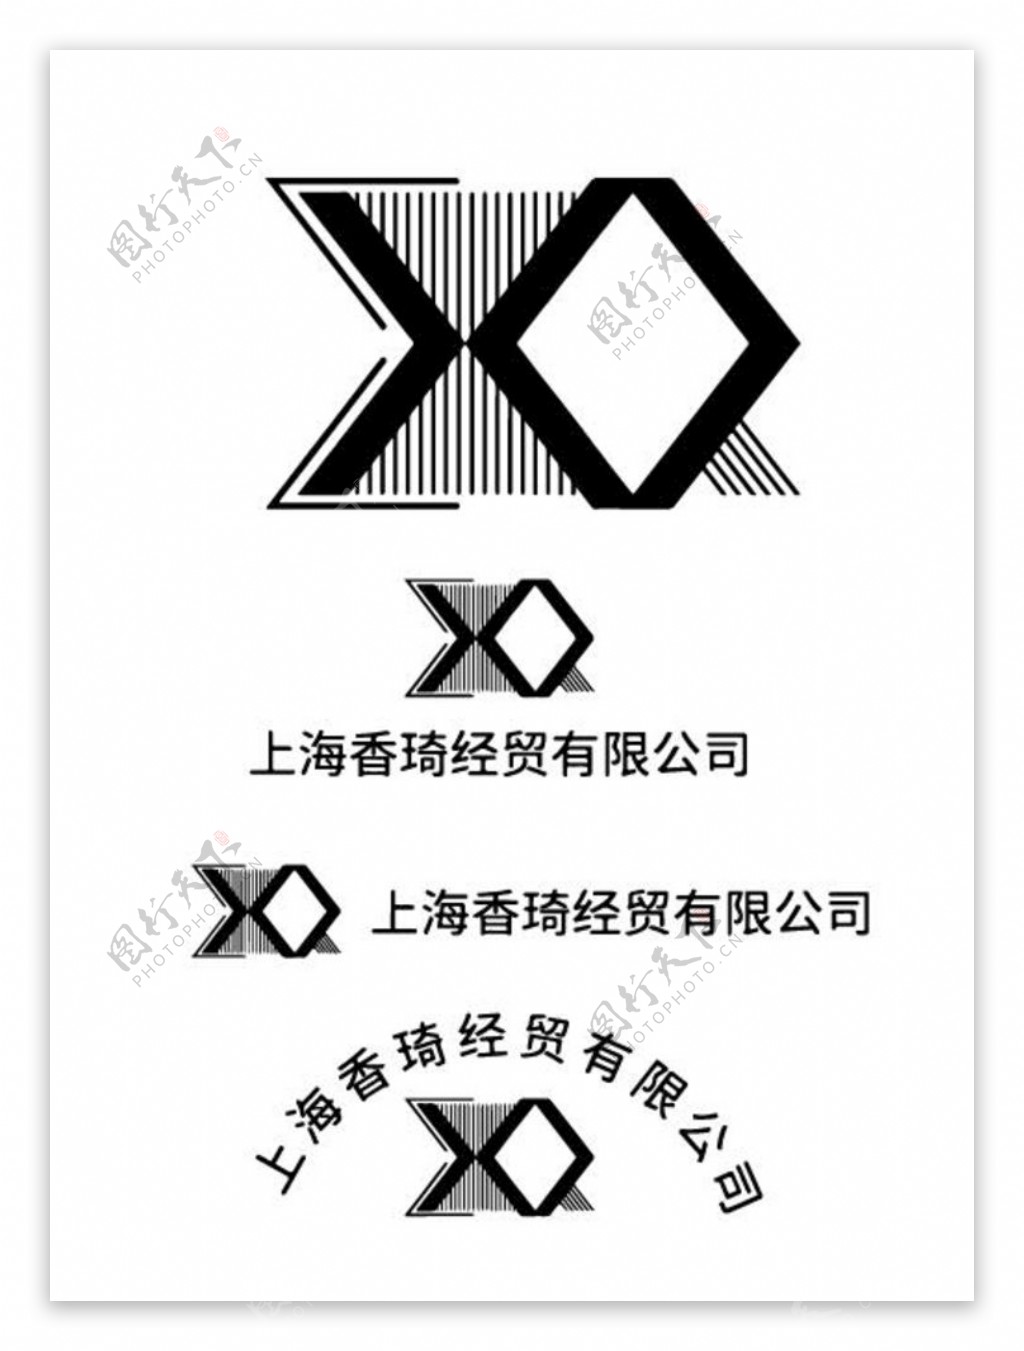 上海香琦经贸有限公司logo图片